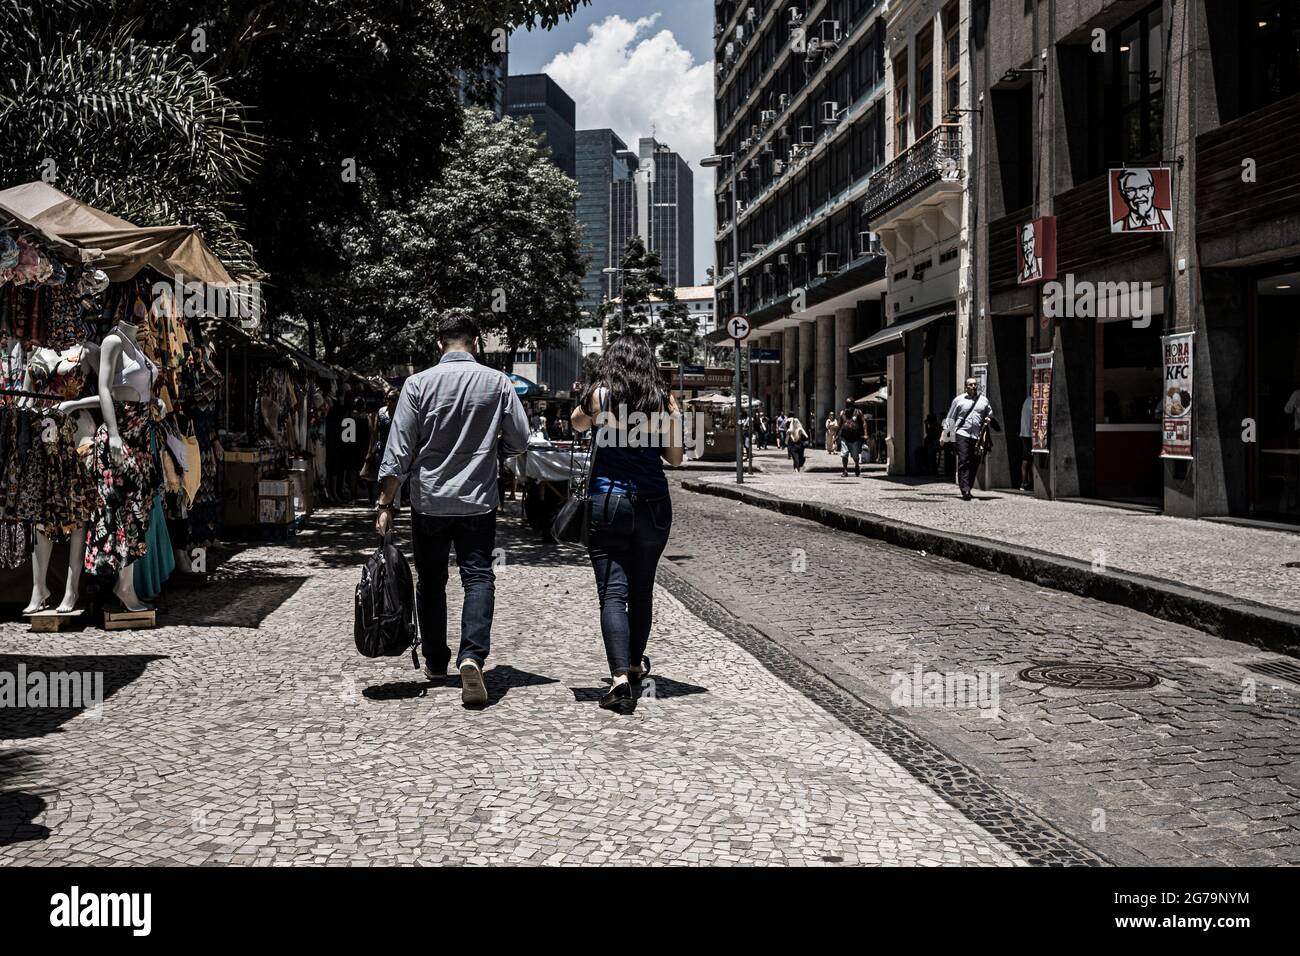 Downtown in Rio de Janeiro, Brazil Stock Photo